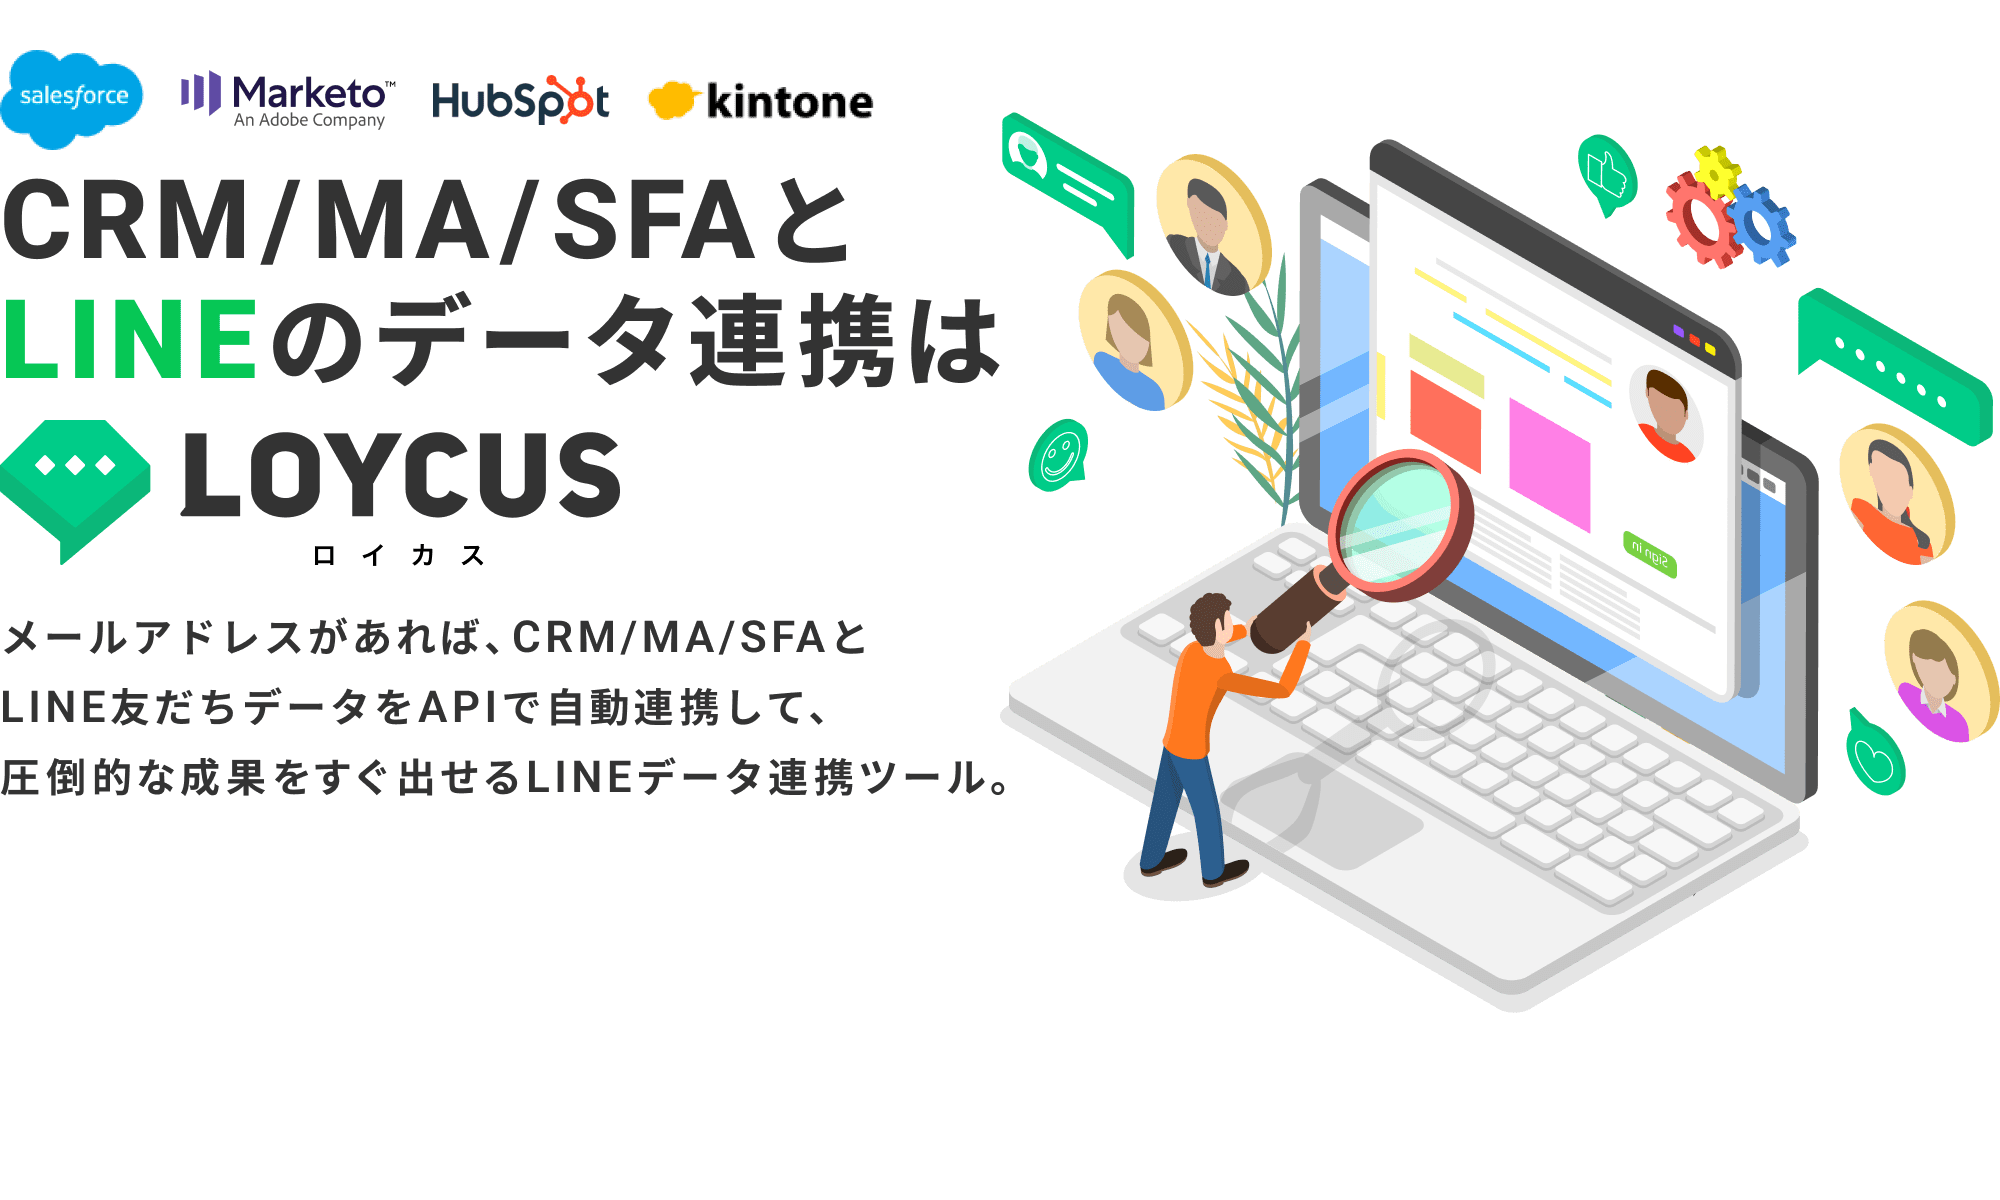 salesforce,marketo,hubspot,kintone,...CRM/MA/SFAとLINEのデータ連携はLOYCUS（ロイカス）｜メールアドレスがあれば、CRM/MA/SFAとLINE友だちデータをAPIで自動連携して、圧倒的な成果をすぐ出せるLINEデータ連携ツール。